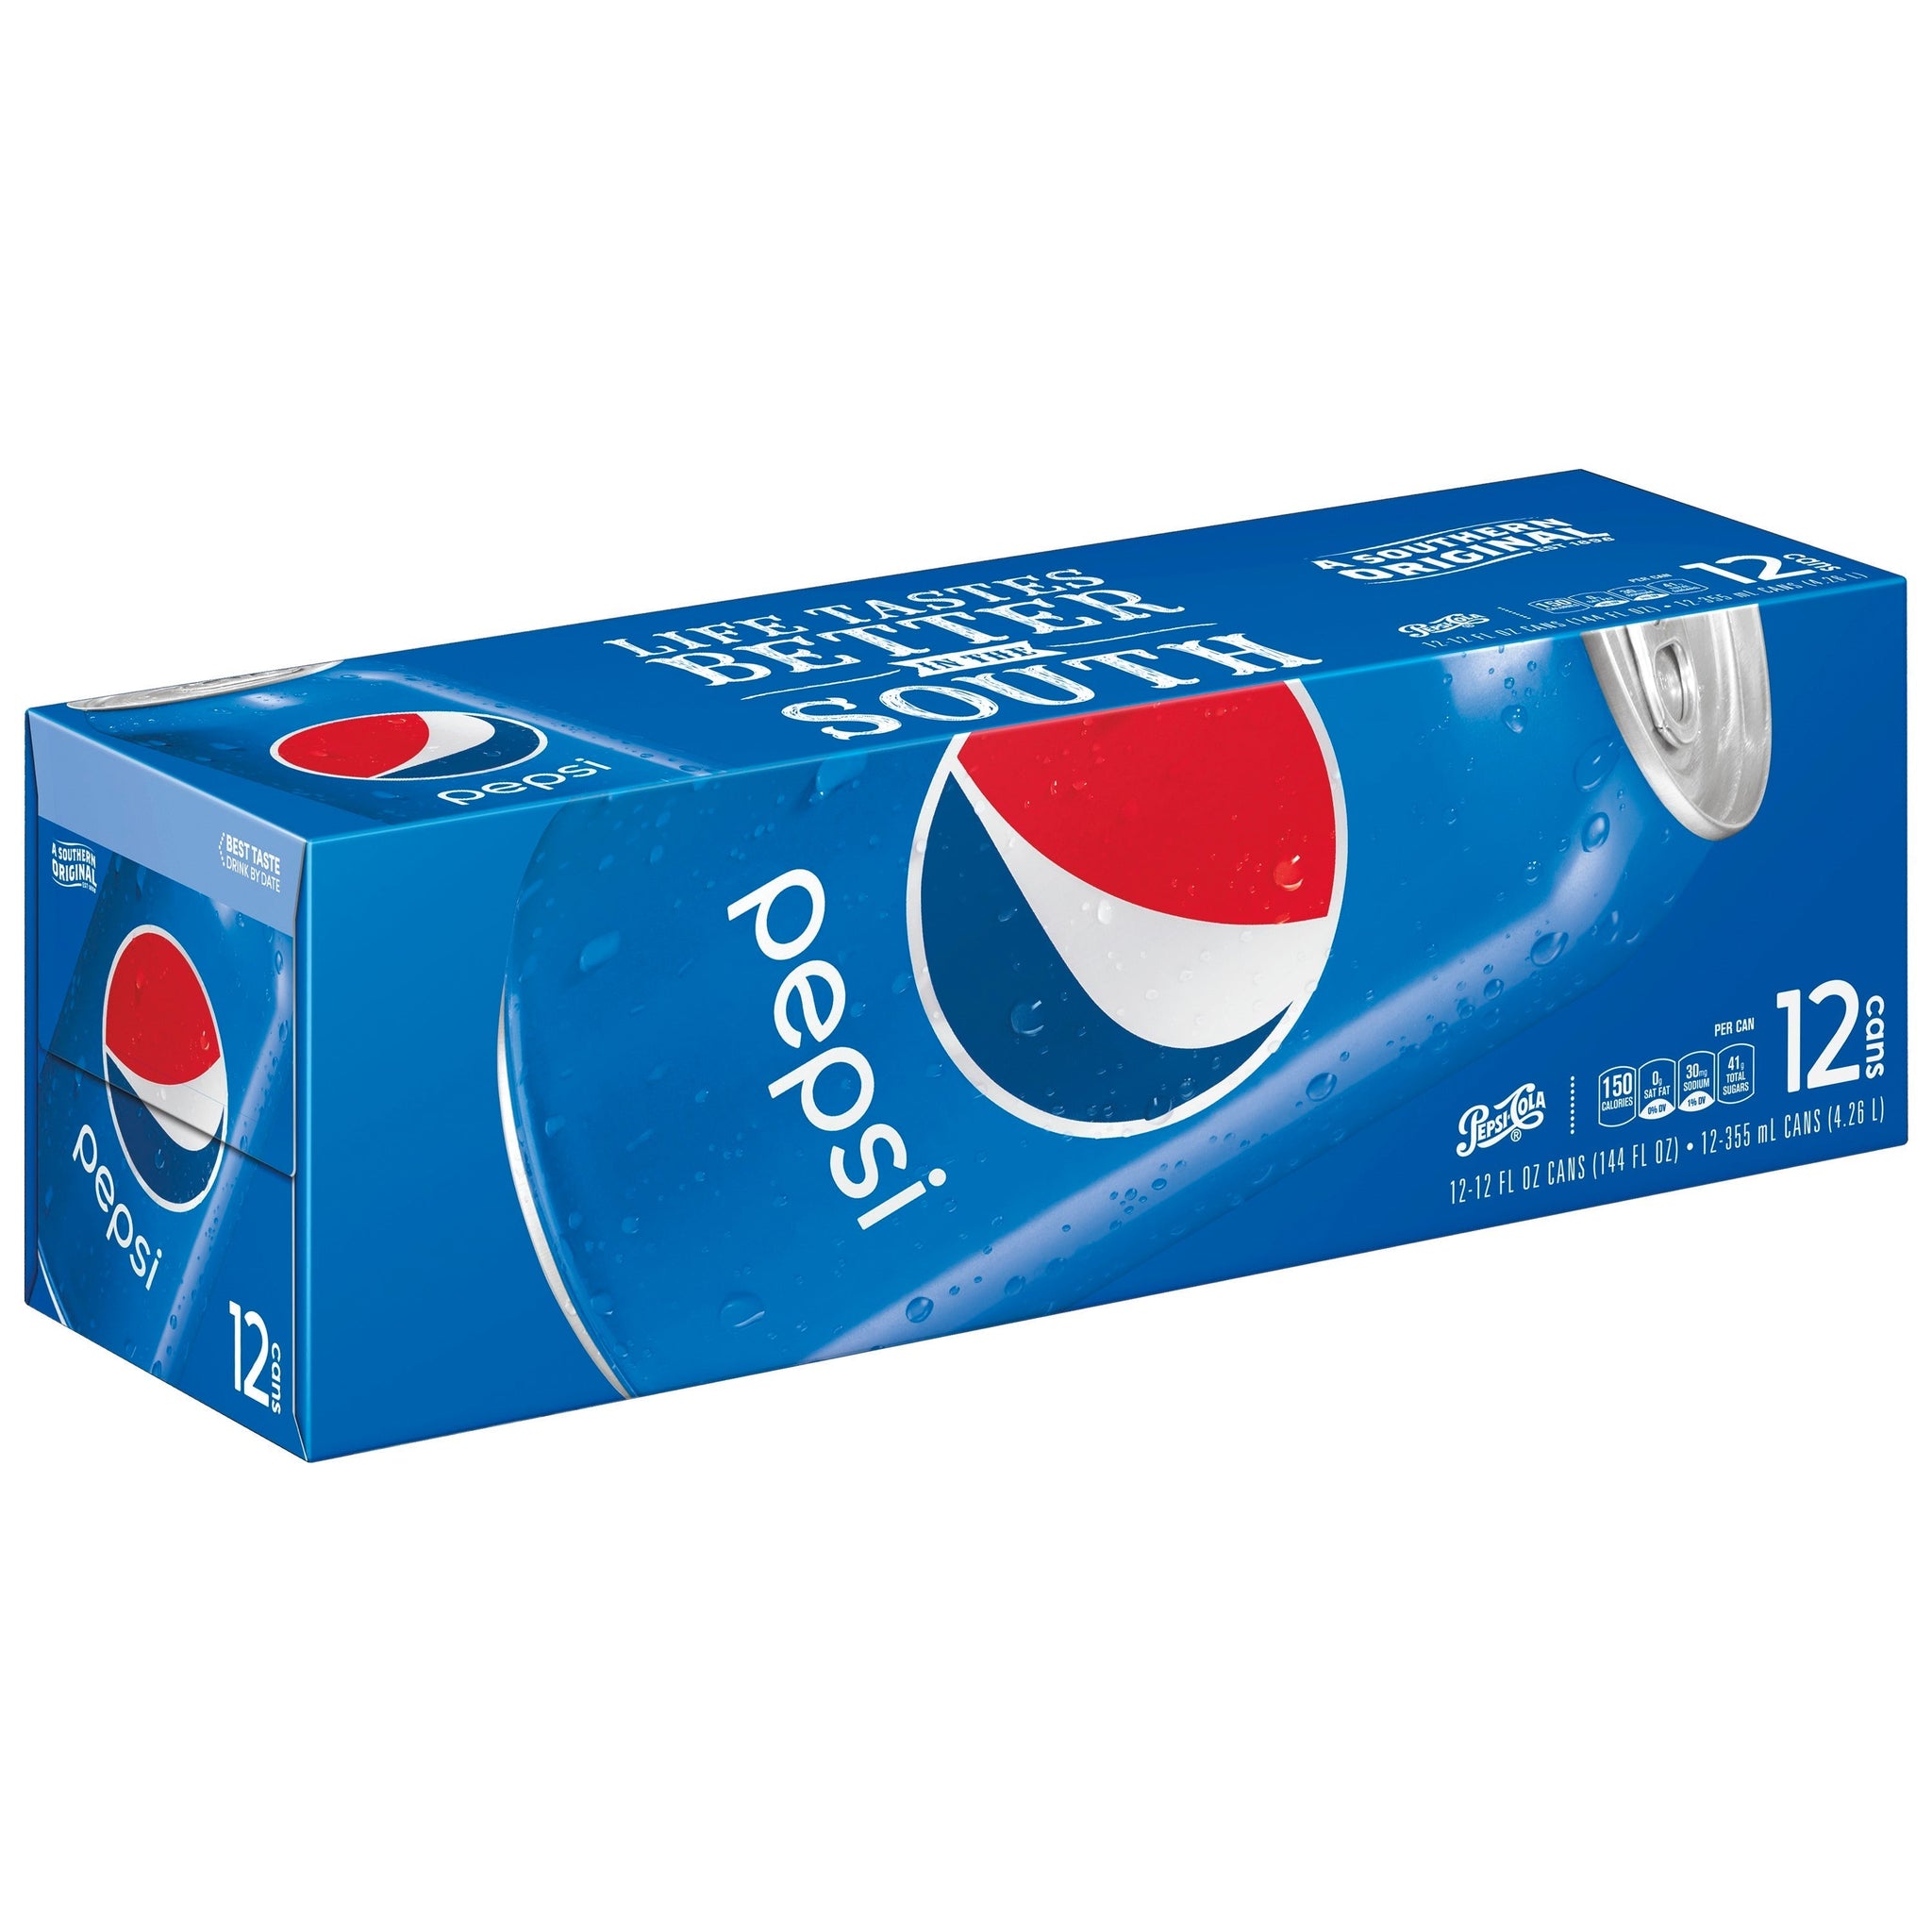 stm>Pepsi, 12 pack